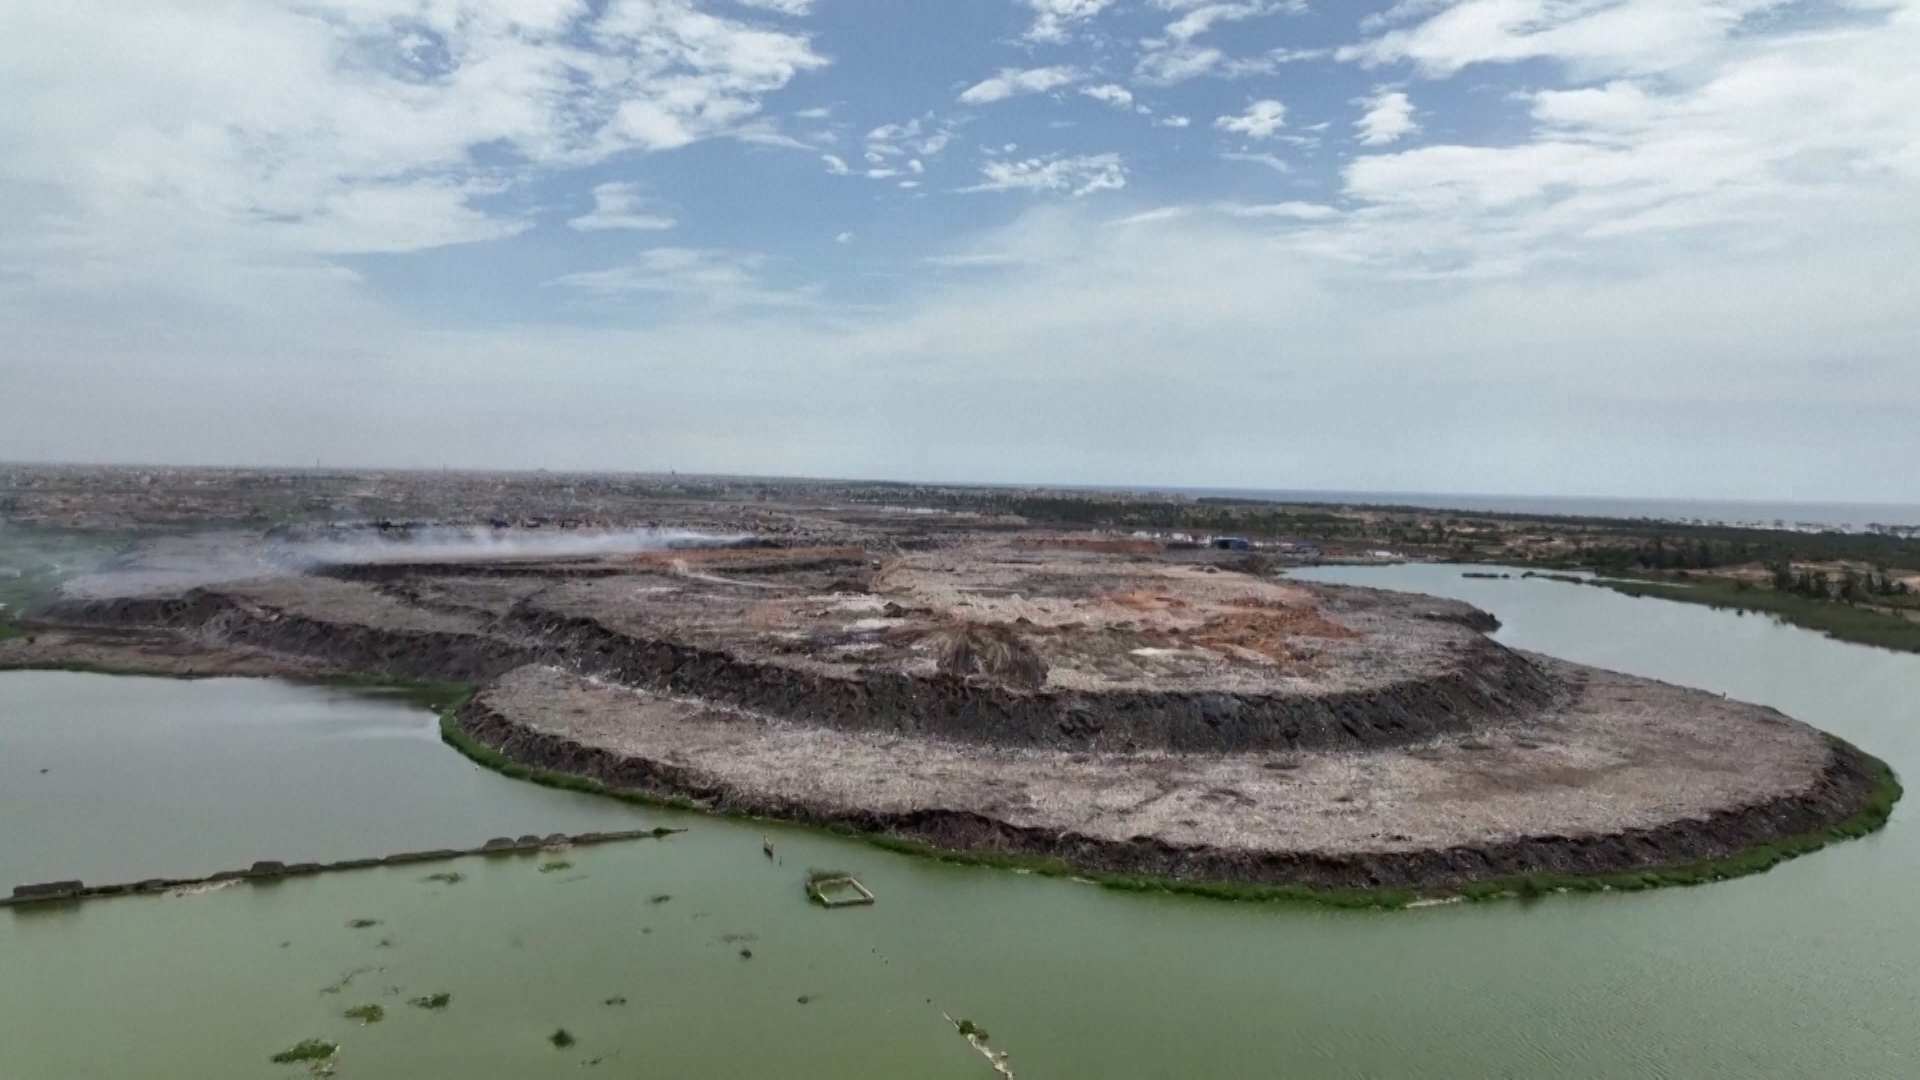 Σενεγάλη: Στα βουνά της χωματερής του Ντακάρ εκατοντάδες άνθρωποι ξεδιαλέγουν σκουπίδια προς ανακύκλωση (video)